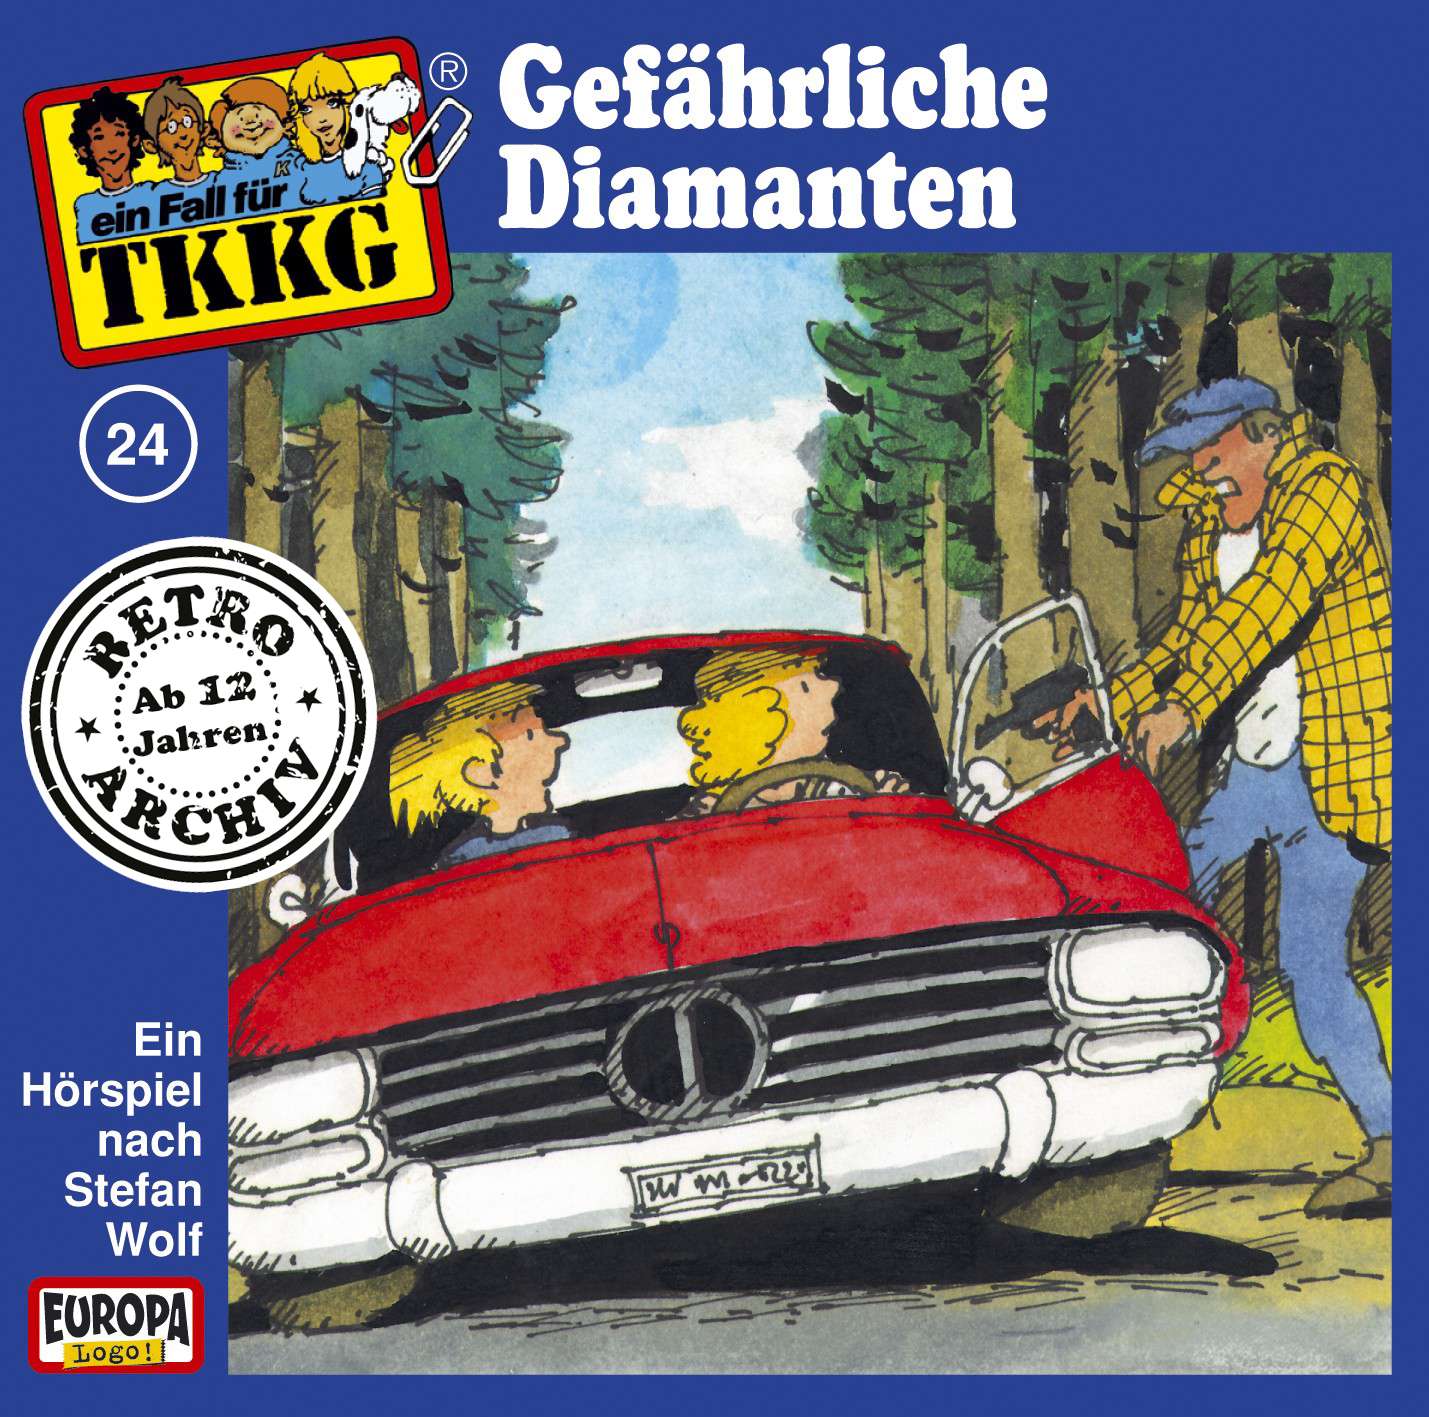 TKKG Retro-Archiv - Gefährliche Diamanten